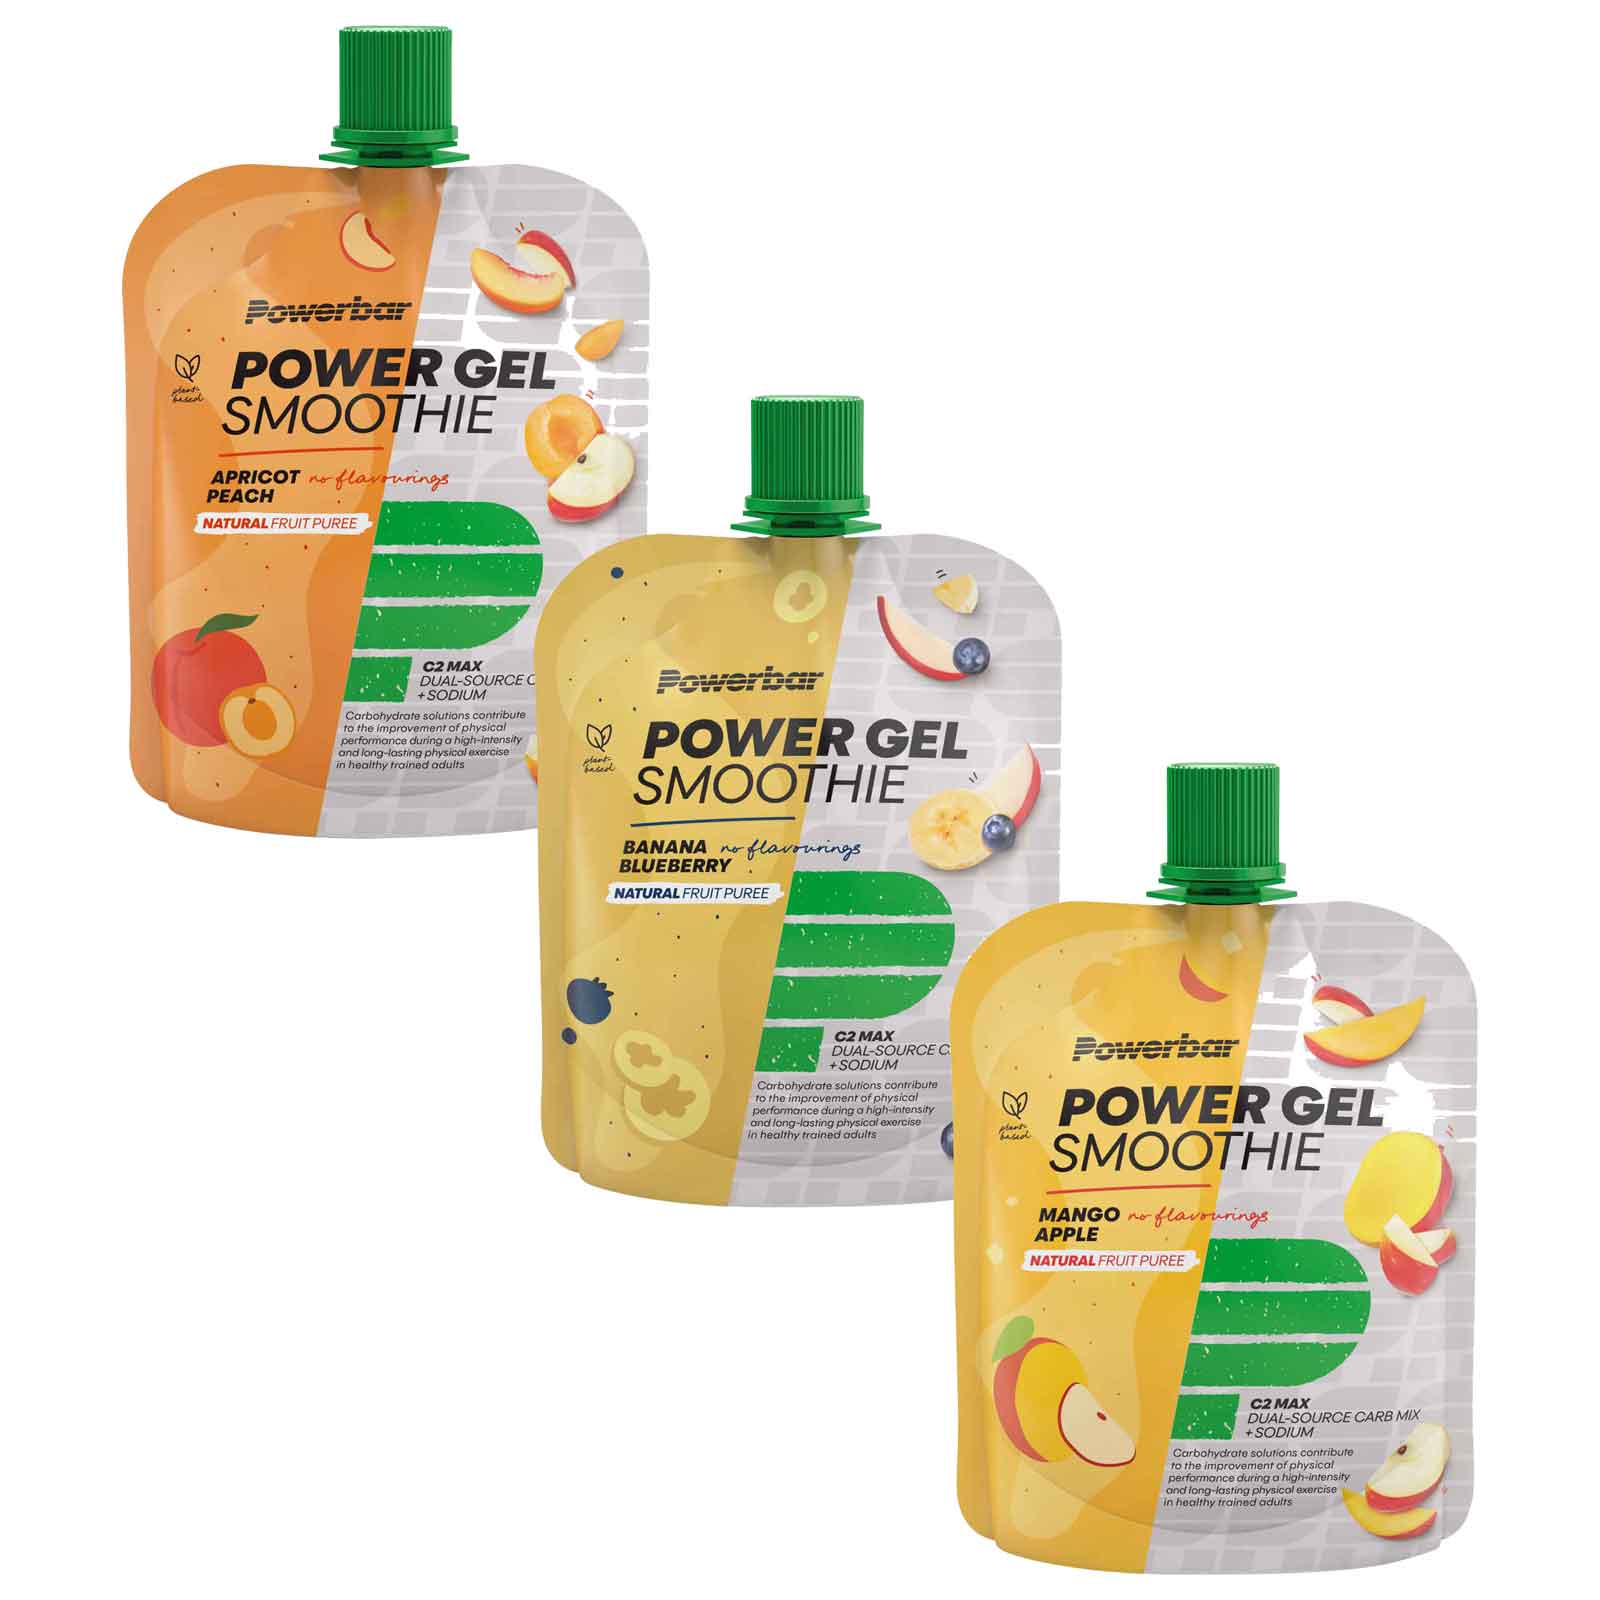 Bild von Powerbar PowerGel Smoothie - Fruchtpüree mit Kohlenhydraten - 4x90g